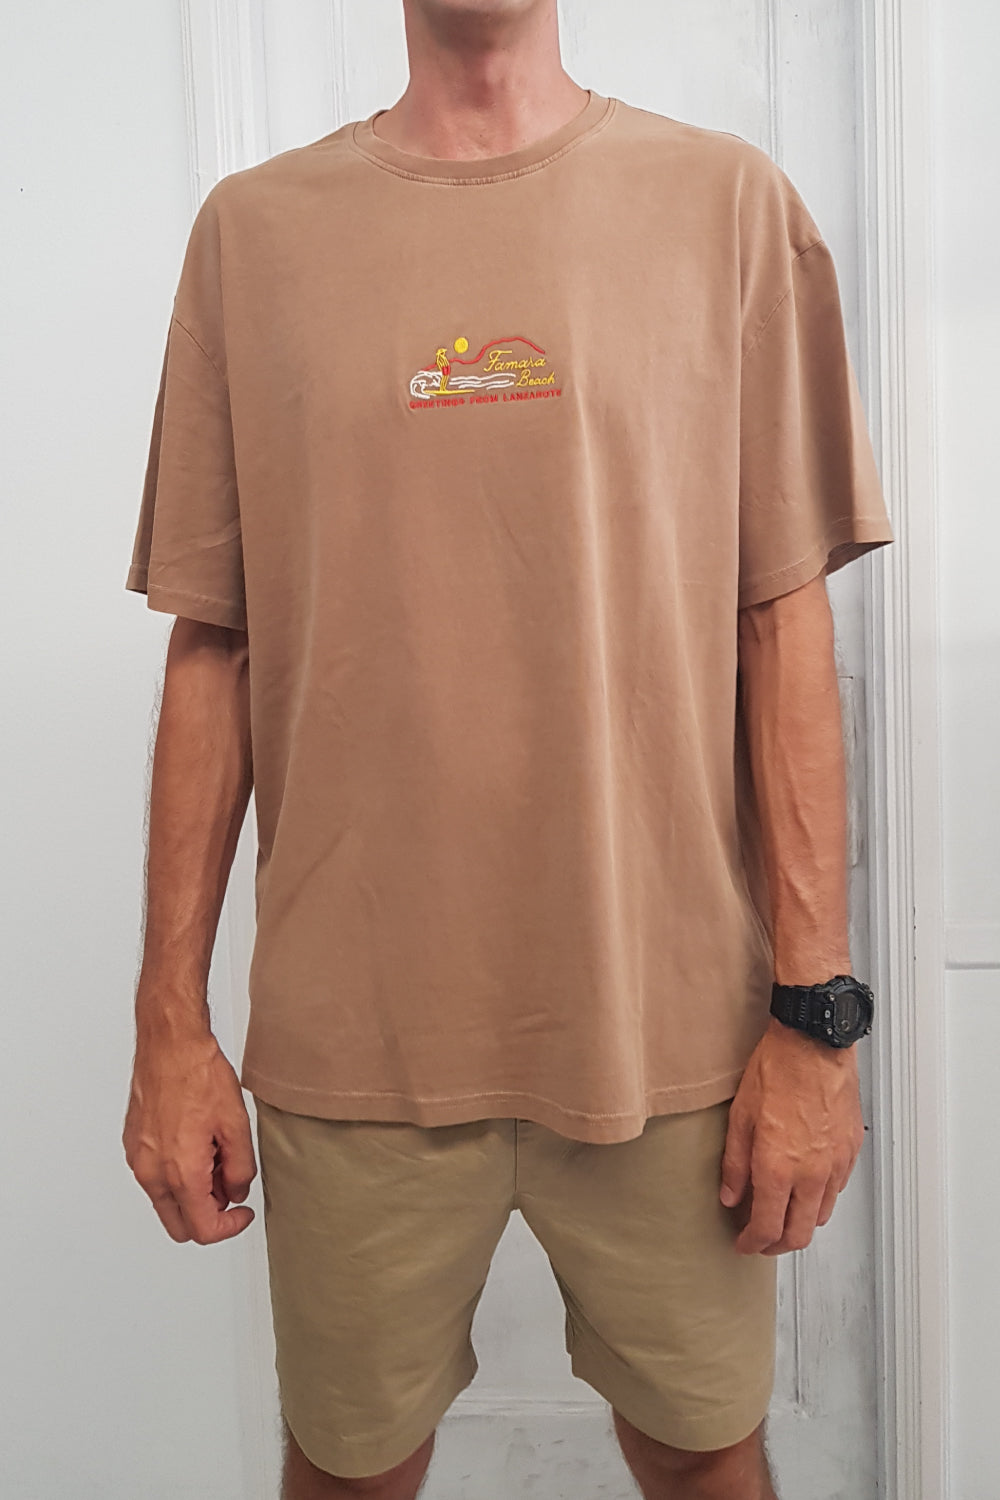 Camiseta famara beach en algodón orgánico color barro con detalle bordado en el pecho